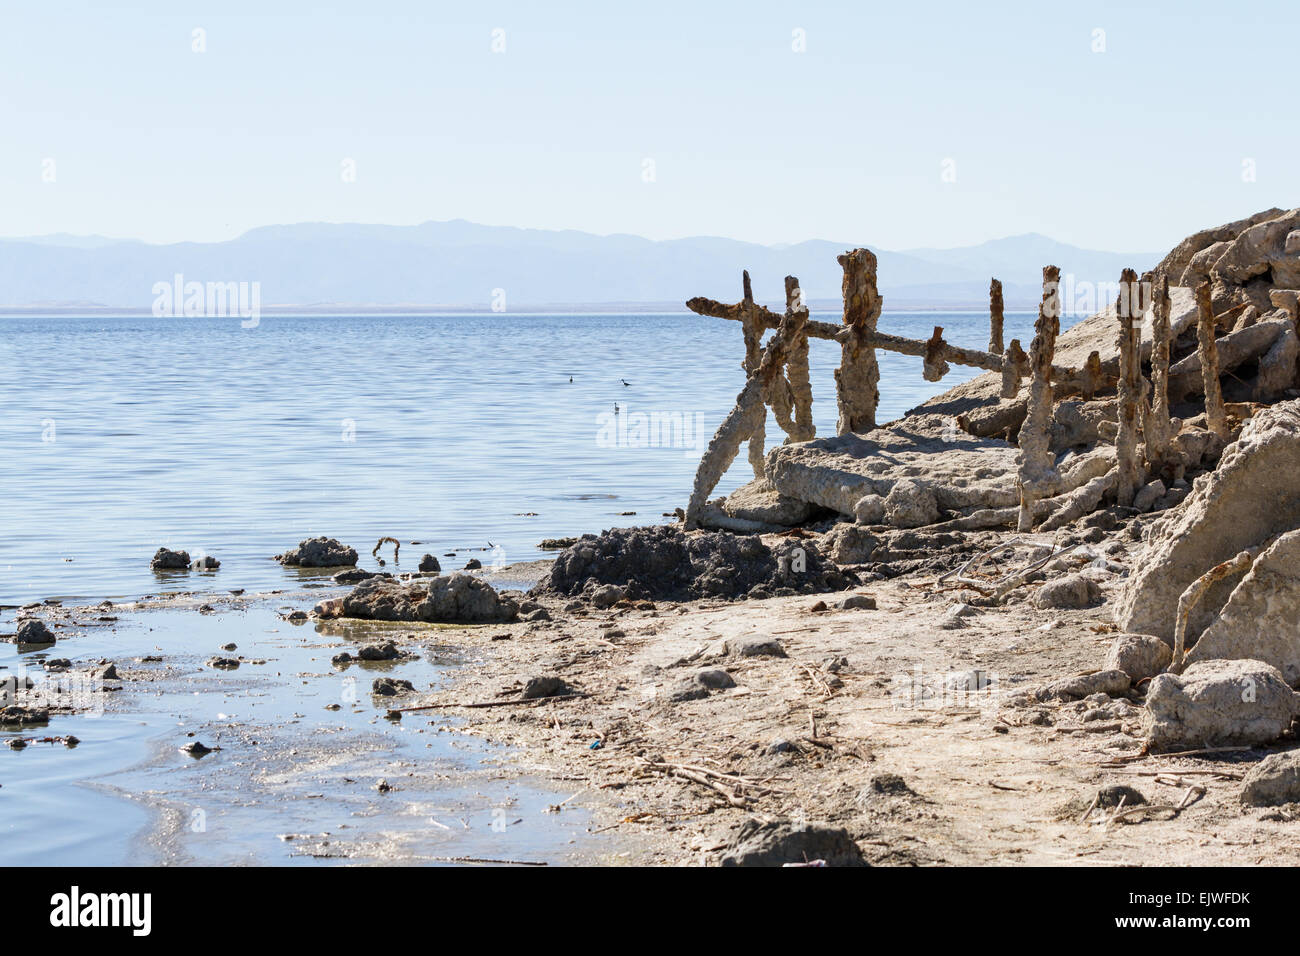 La demeure et l'article images de la ville autrefois populaires Bombay Beach dans la mer de Salton, la Californie. Banque D'Images